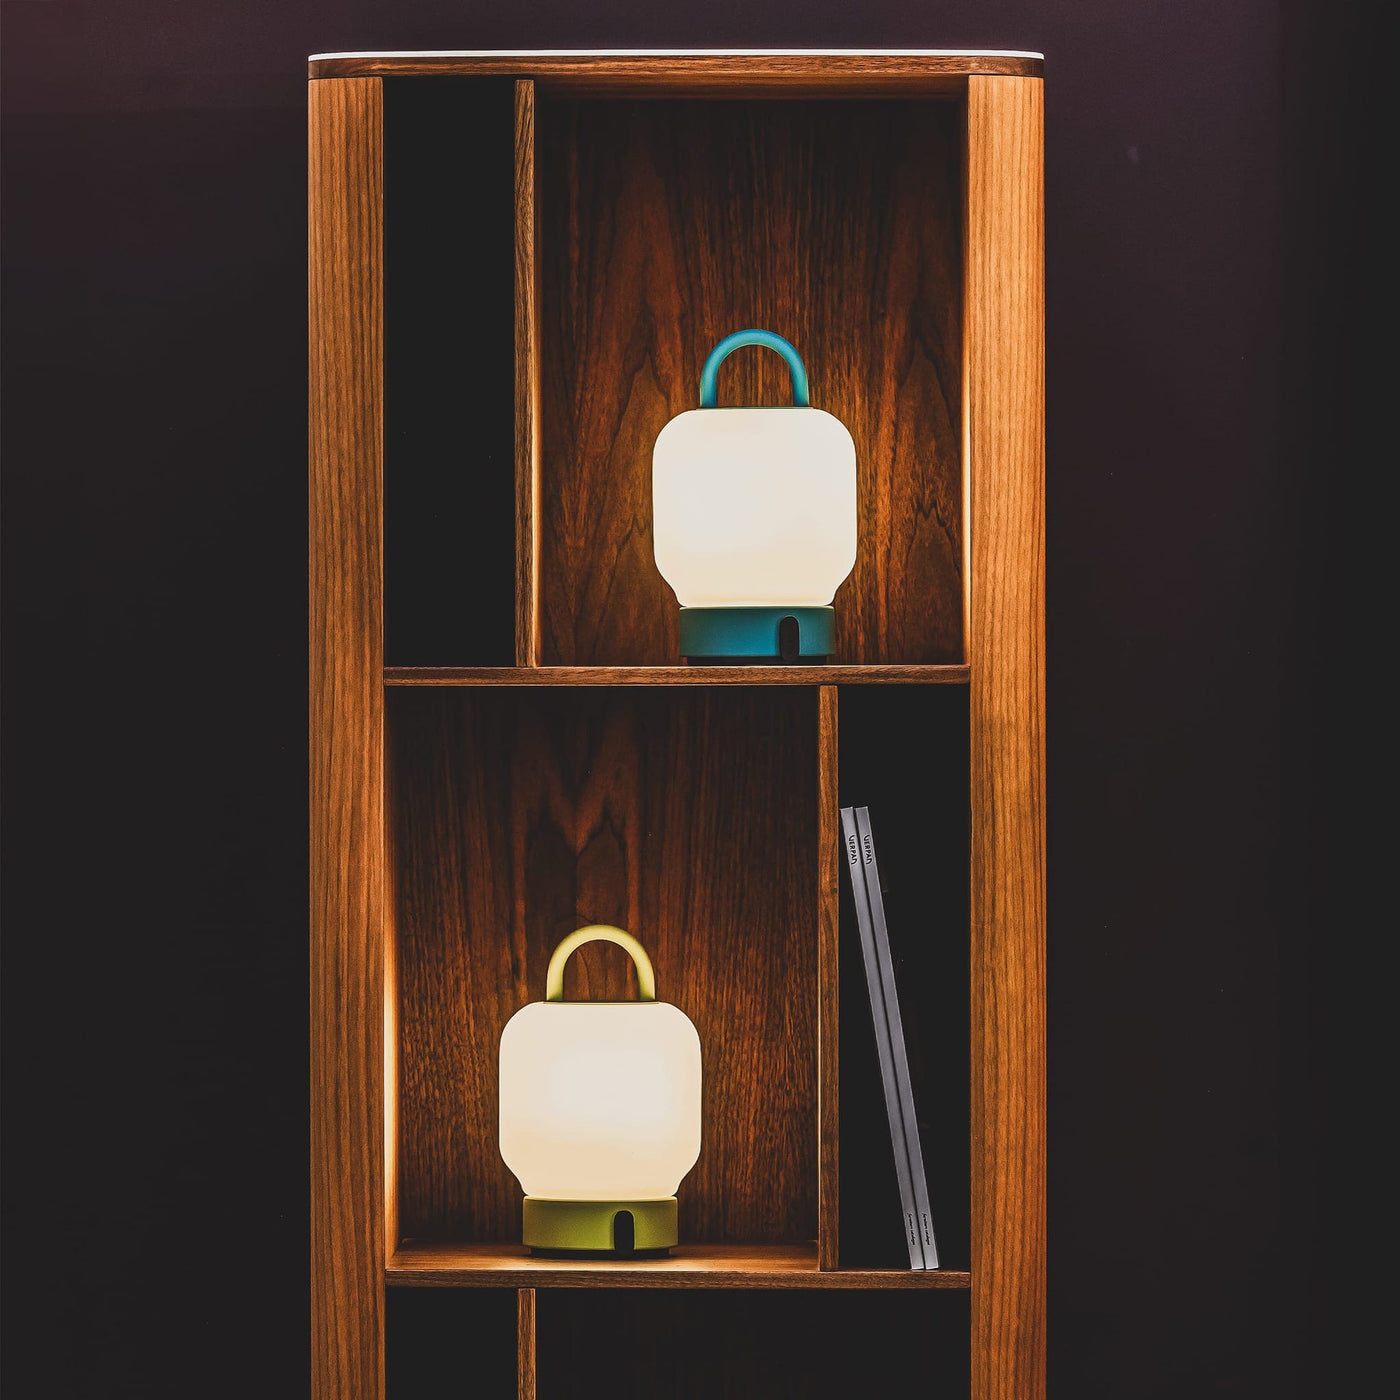 Élégance portable : La lanterne Loome de kooduu marie design raffiné et portabilité. Lumière réglable, poignée ergonomique et station USB ajoutent sophistication à tout espace.